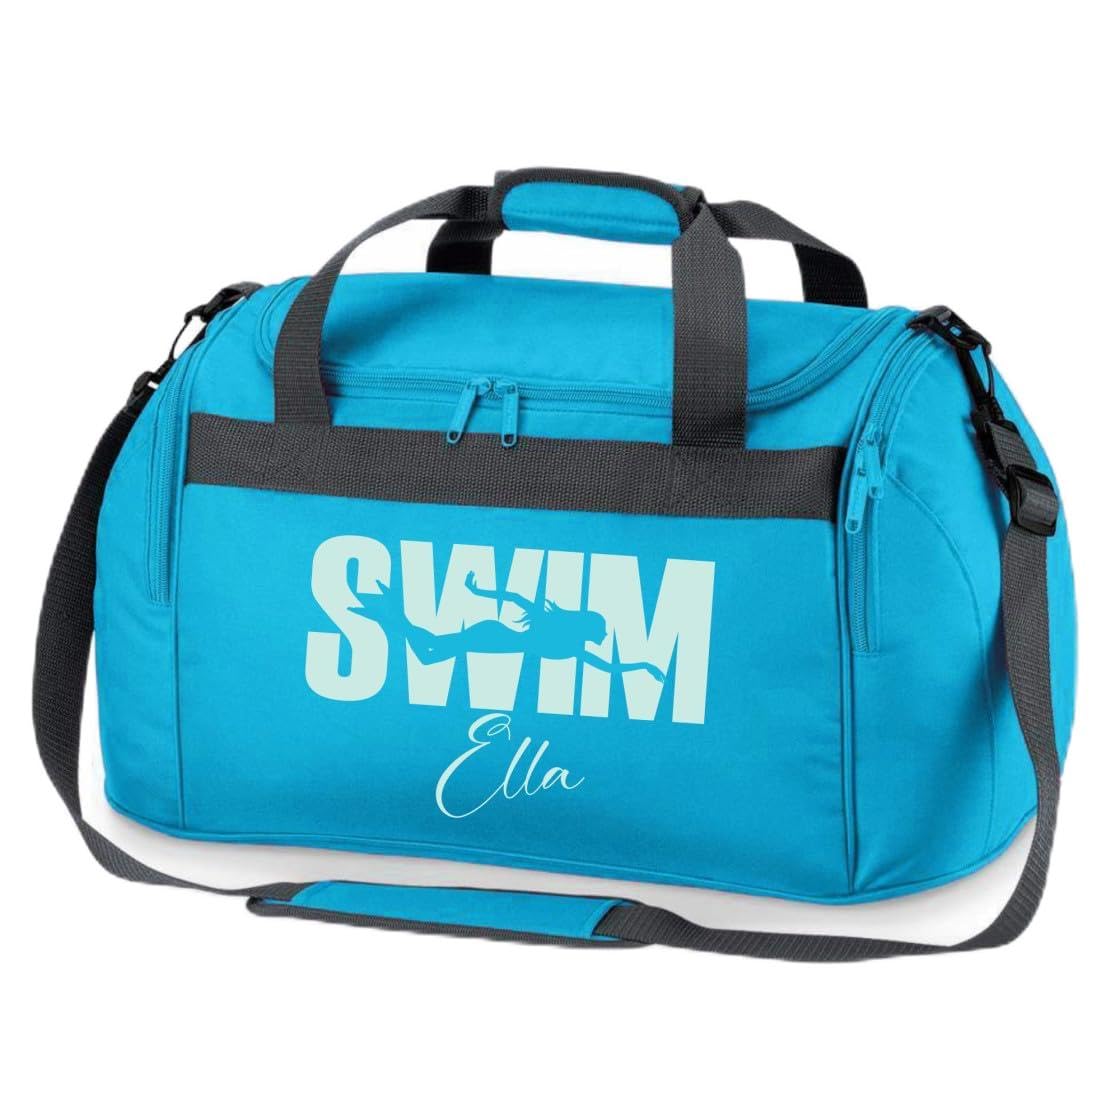 minimutz Sporttasche Schwimmen für Kinder - Personalisierbar mit Name - Schwimmtasche Swim Duffle Bag für Mädchen und Jungen (türkis)